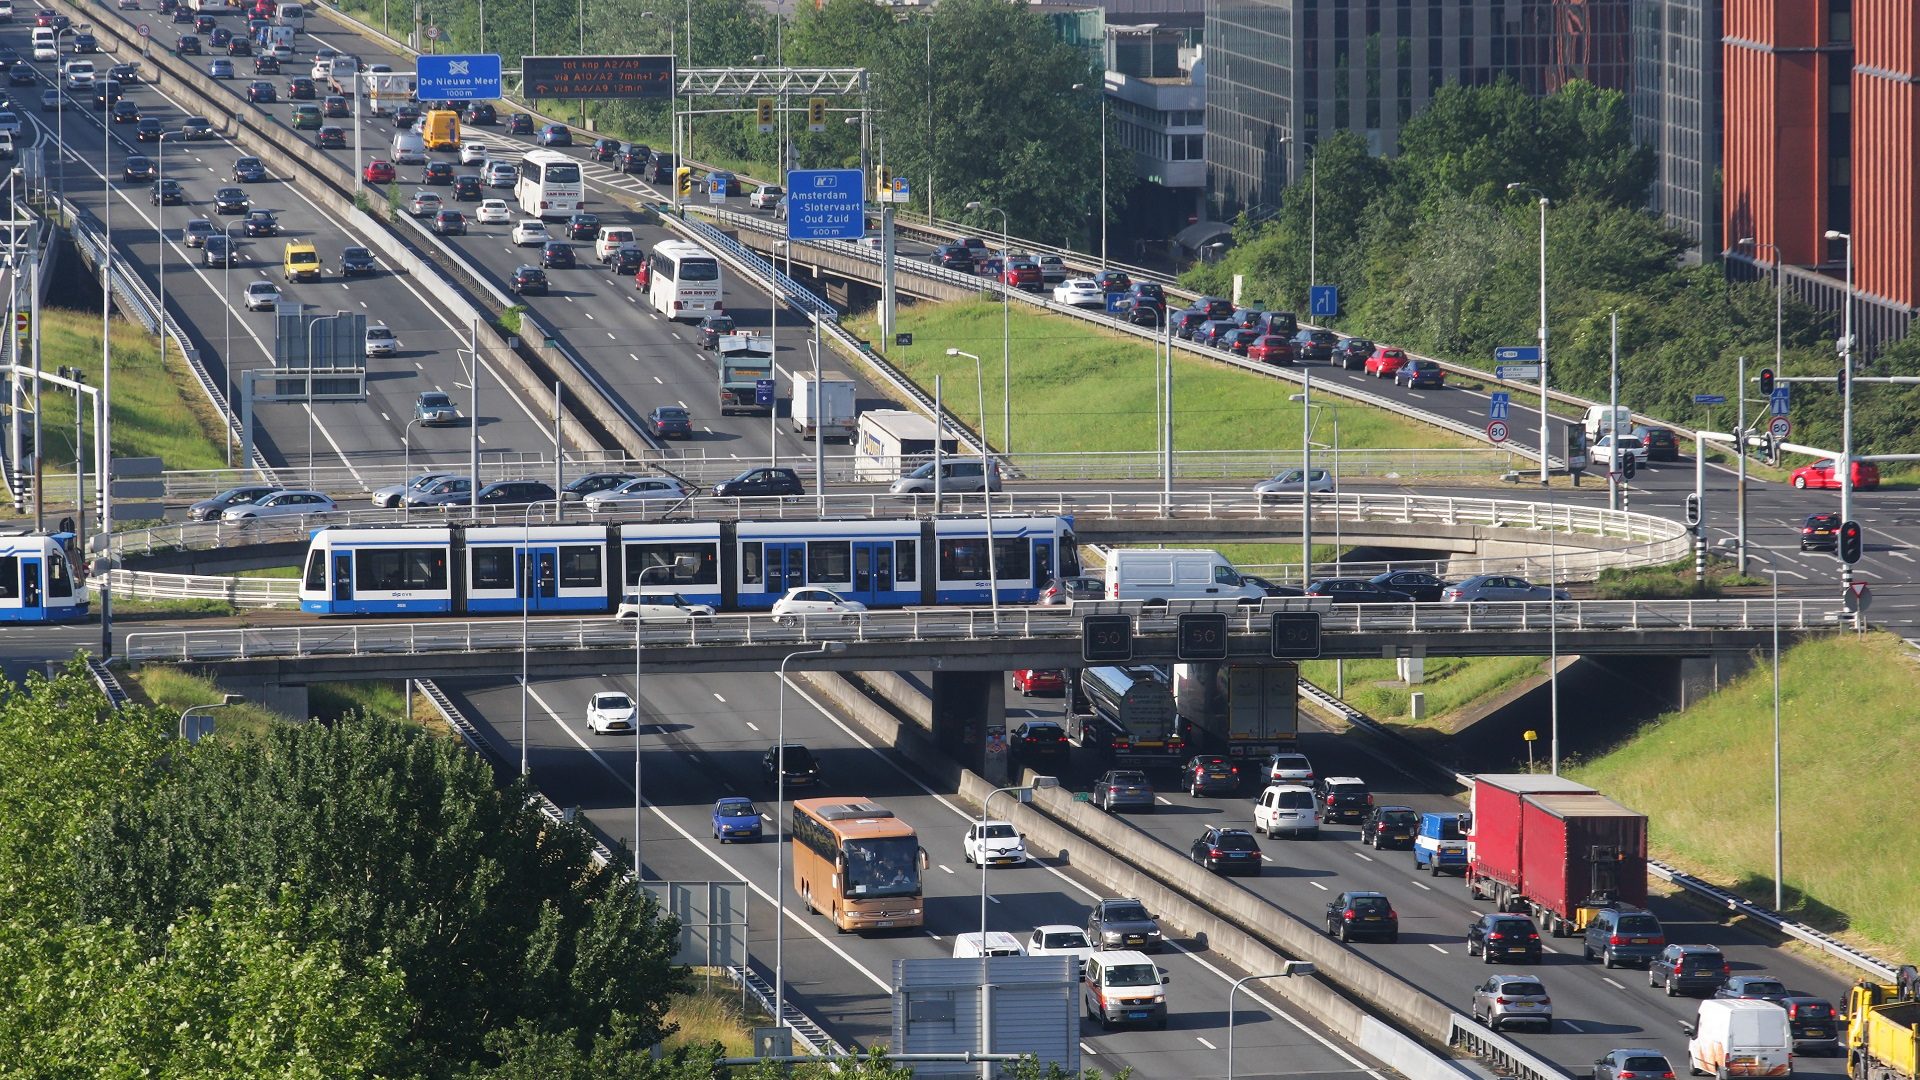 Hà Lan là nước có hệ thống giao thông công cộng và chính sách bảo vệ môi trường rất tốt, nhưng nguy cơ ô nhiễm do nitơ oxit vẫn đang có xu hướng gia tăng. Ảnh: Getty Images. 